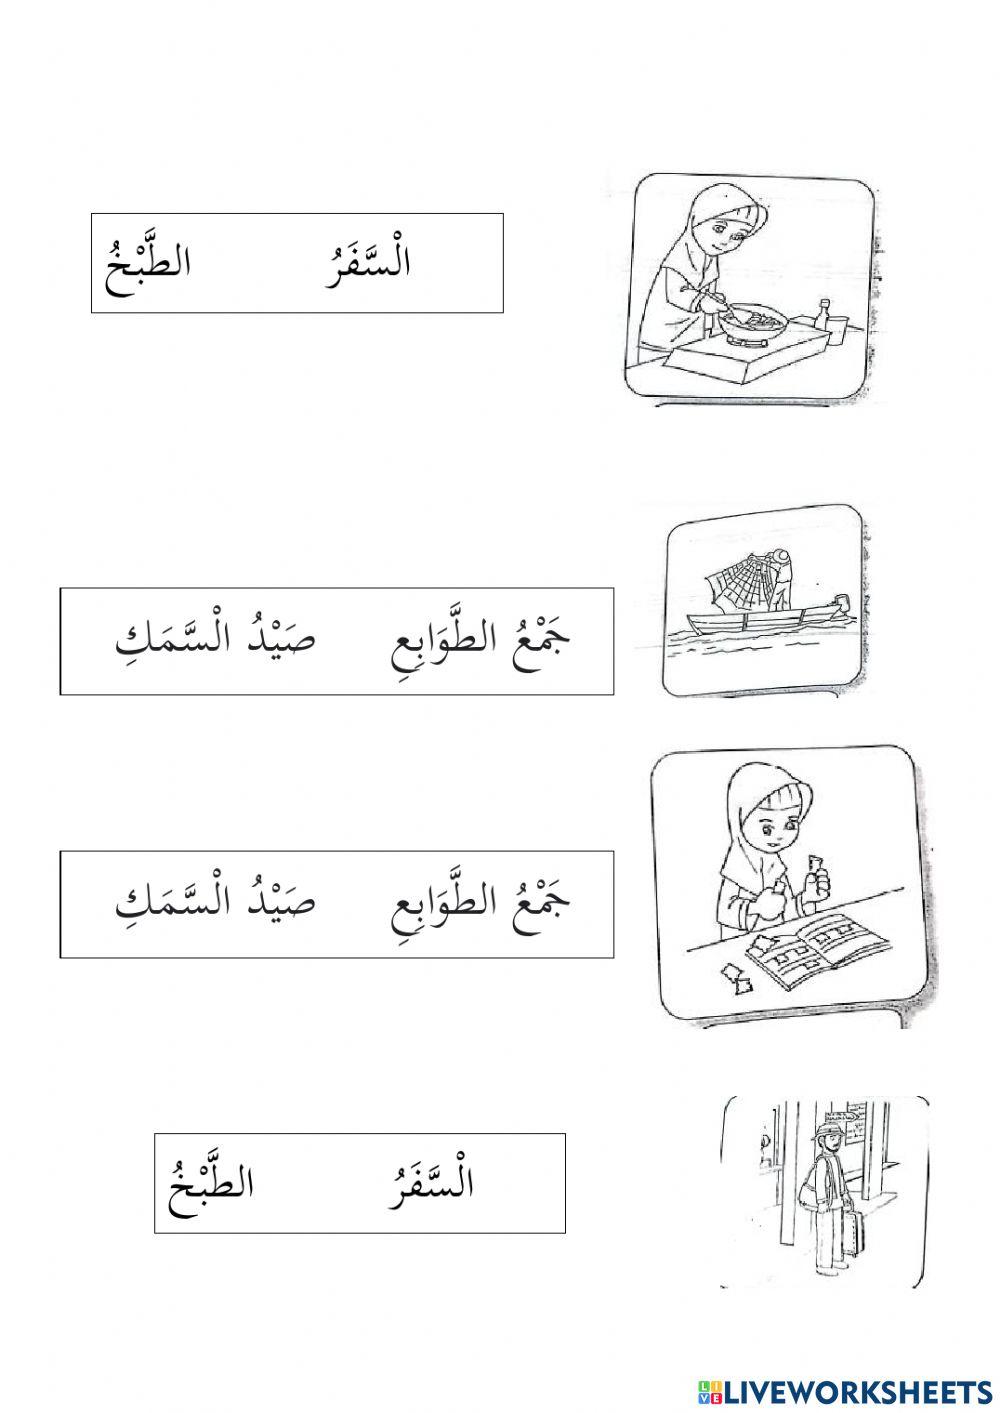 Hobi bahasa arab